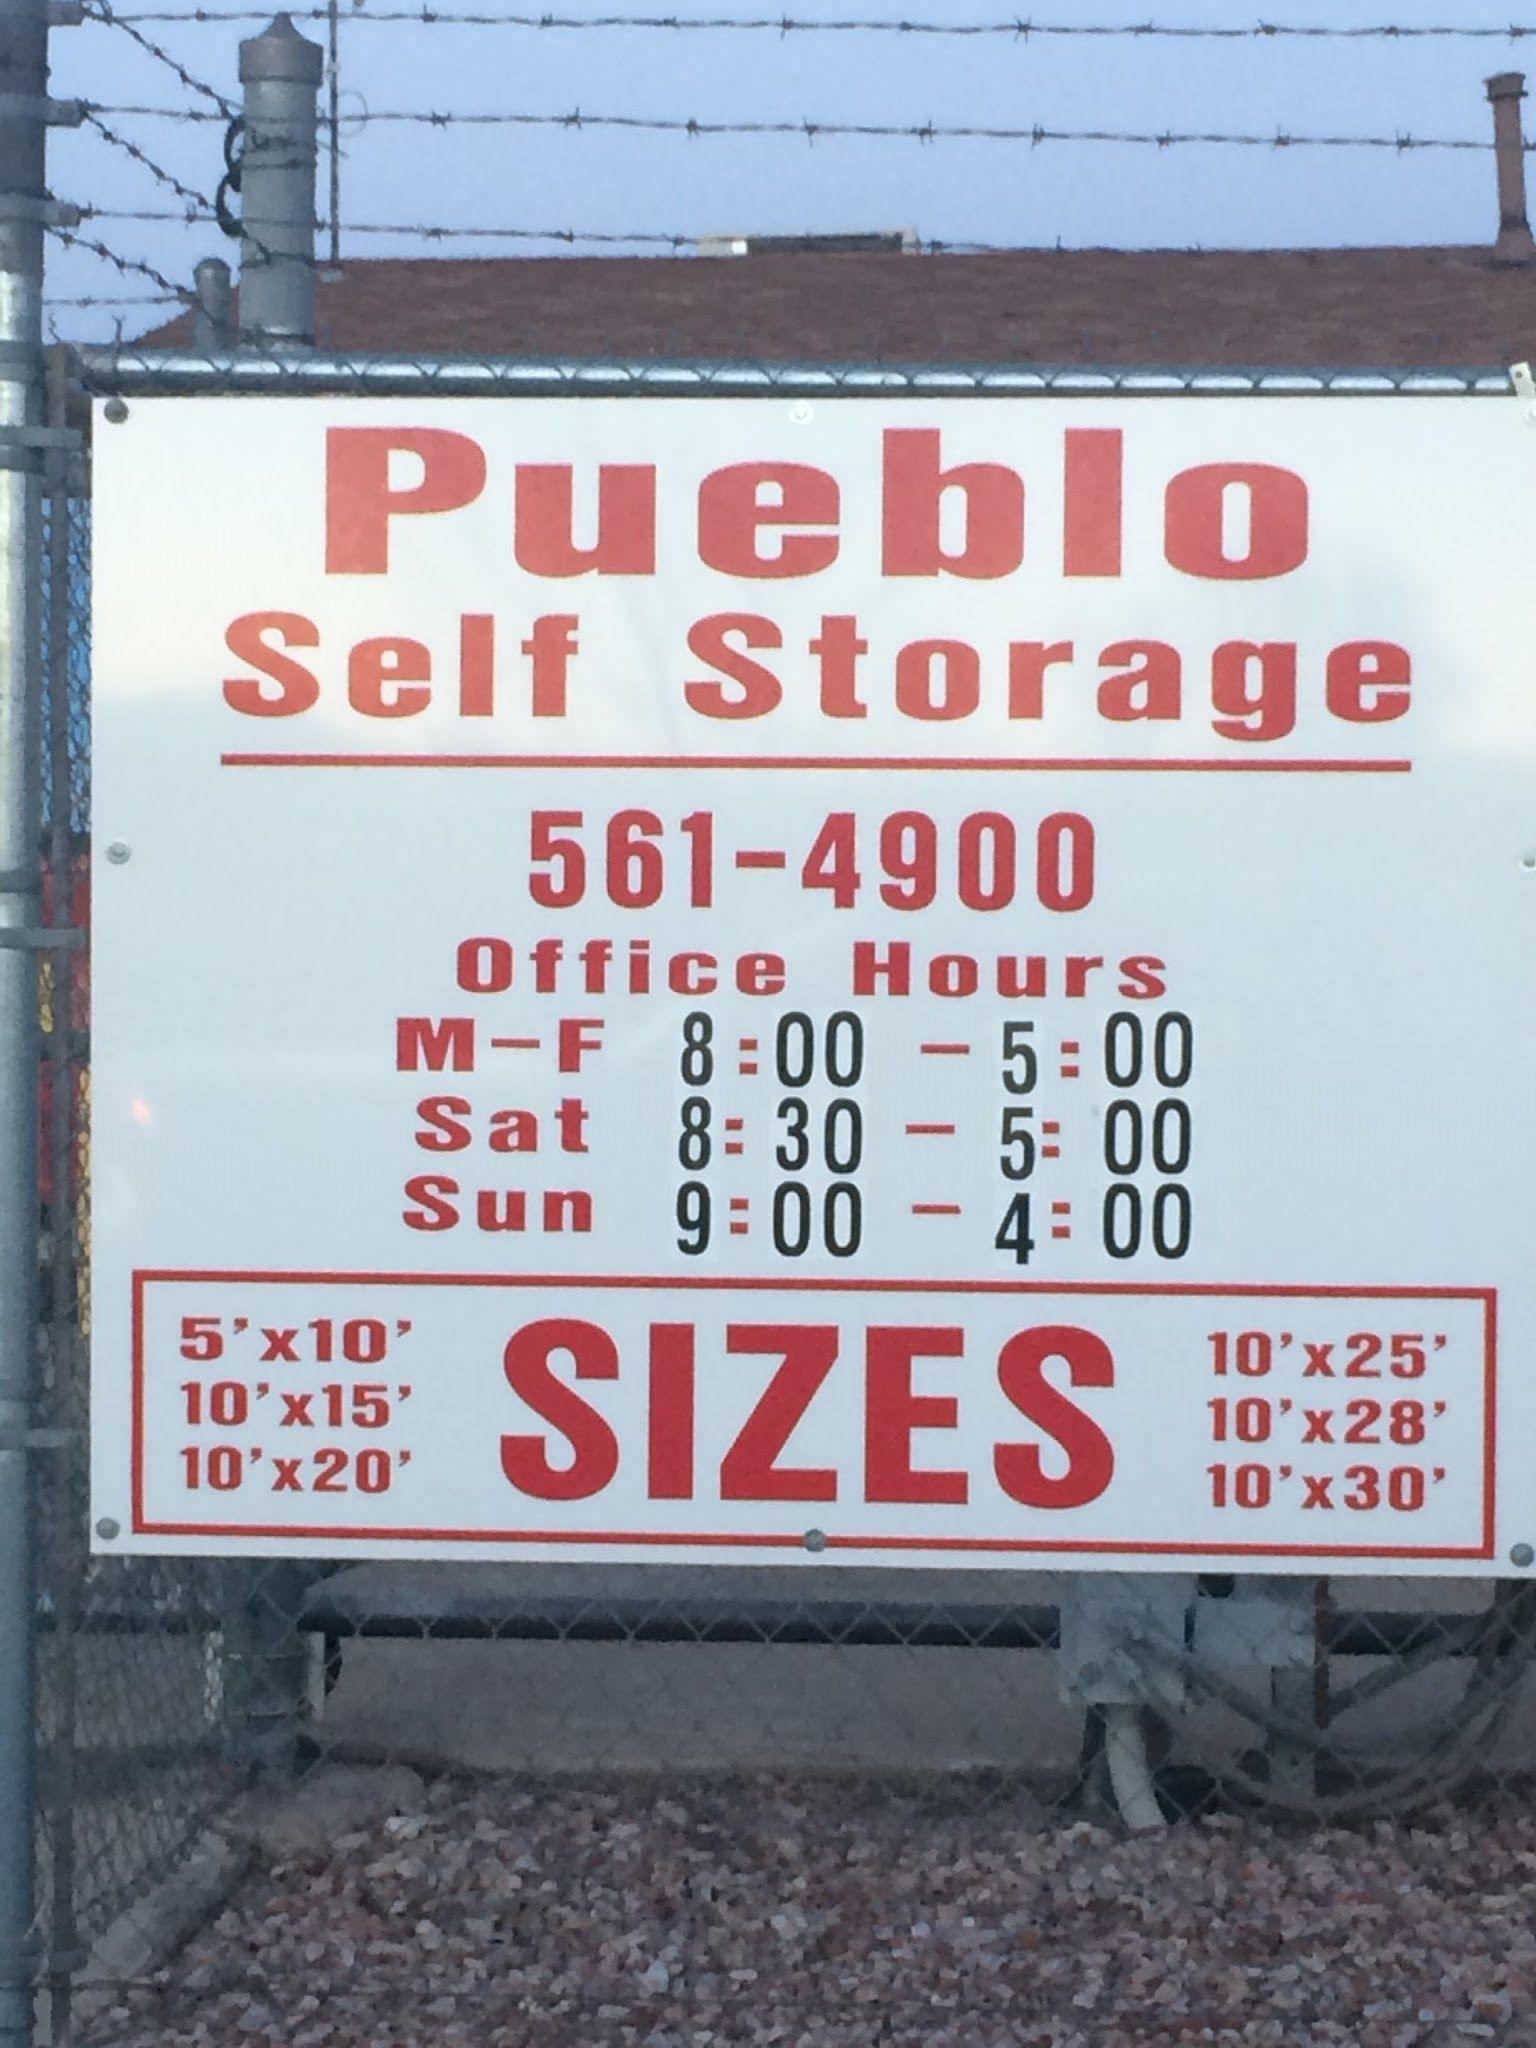 Pueblo Self Storage